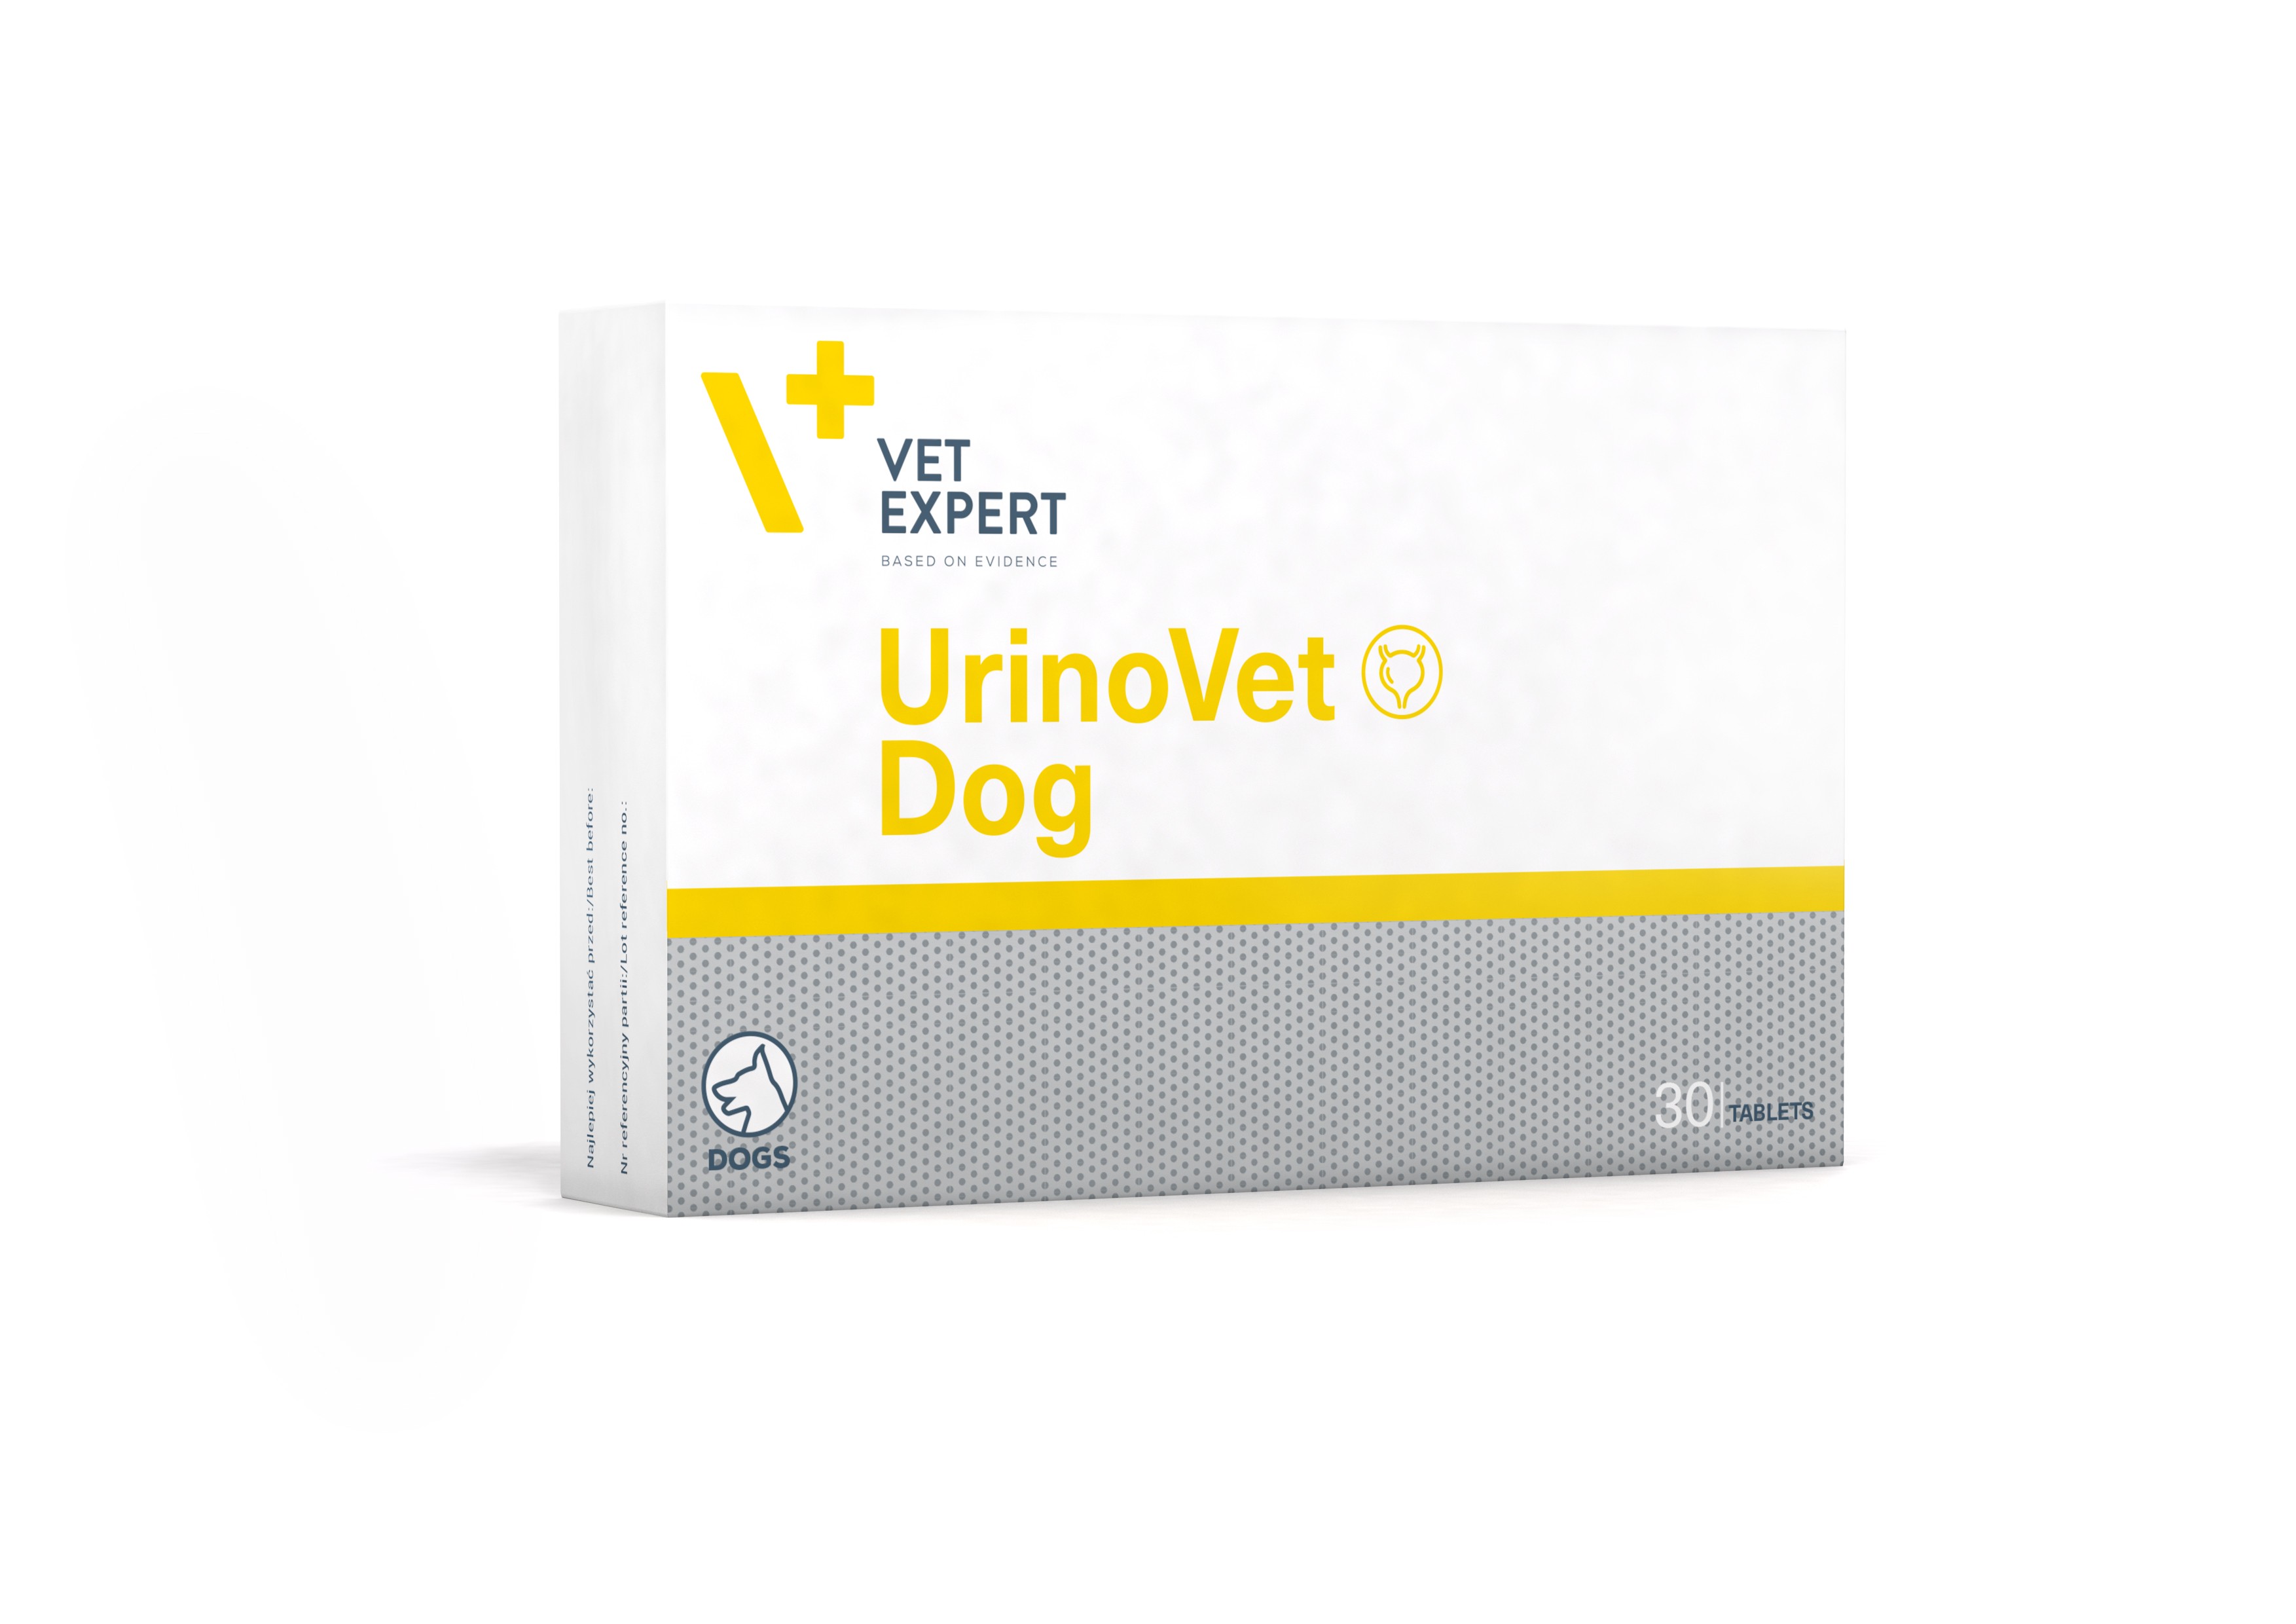 VET EXPERT URINOVET DOG - preparat na układ moczowy dla psów